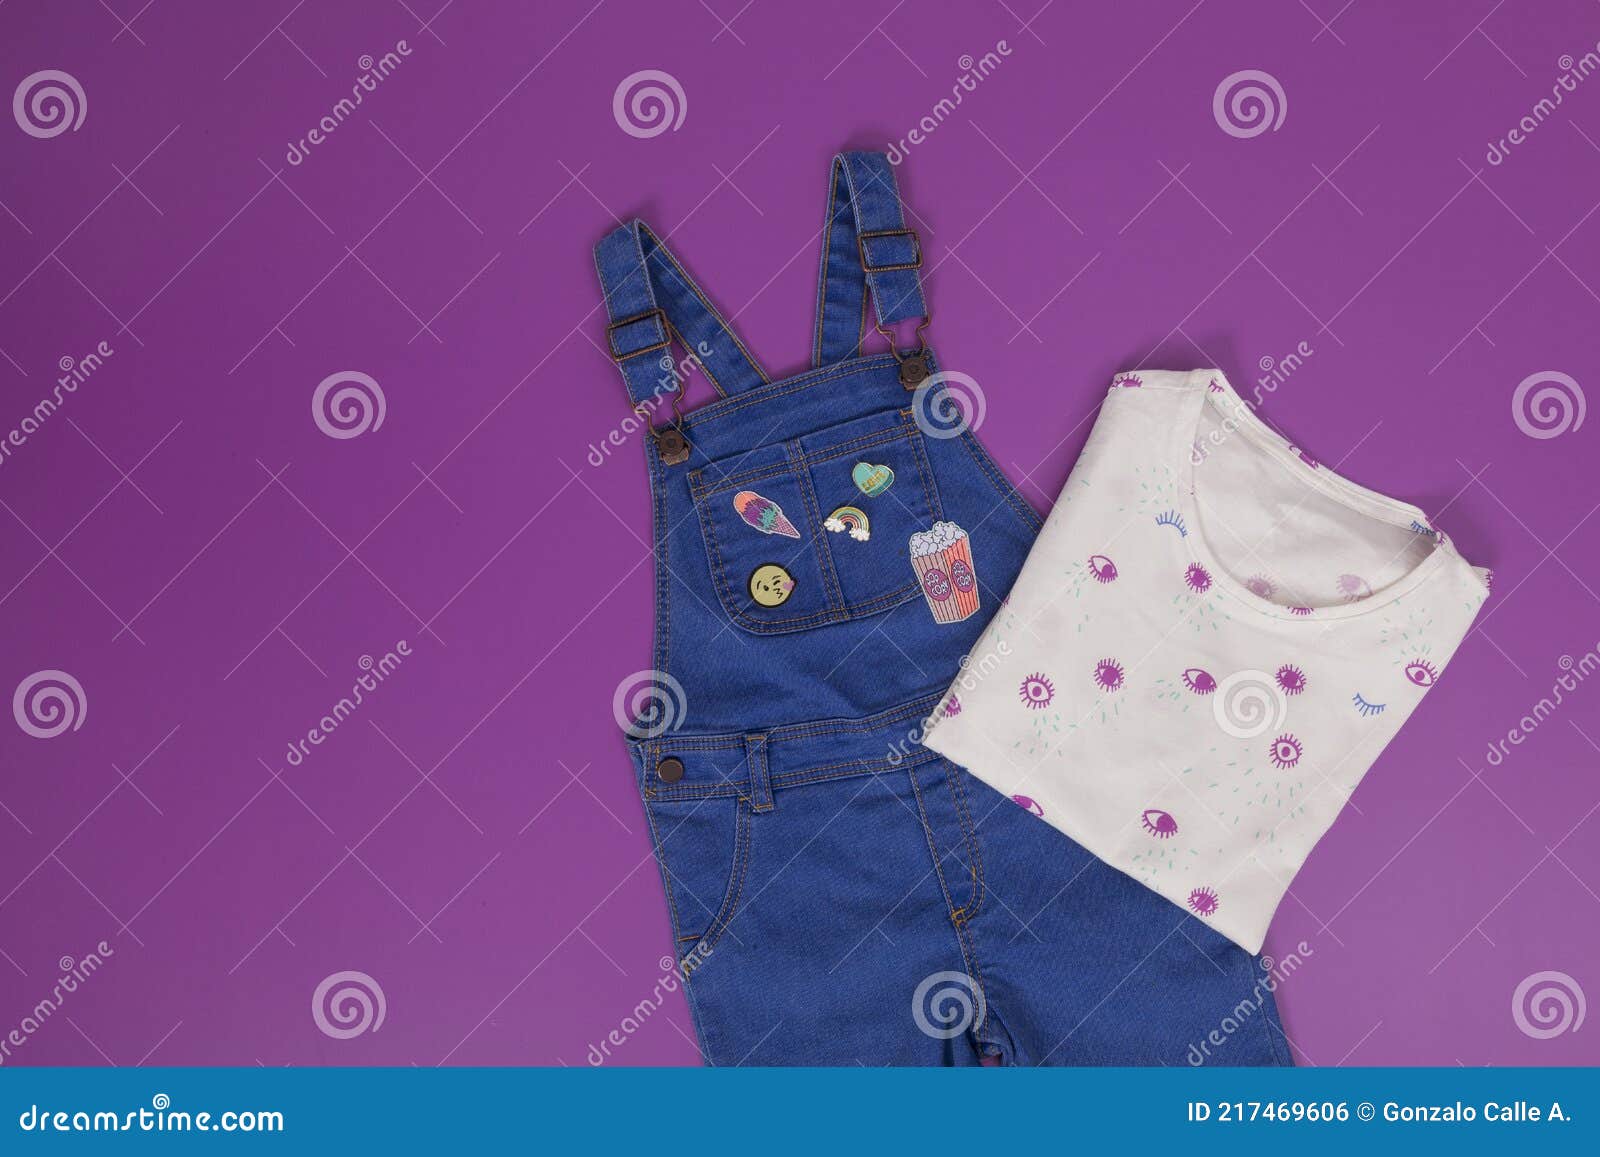 Fashion for Little Girls - Girls Clothing Set Stock Photo - Image of ...